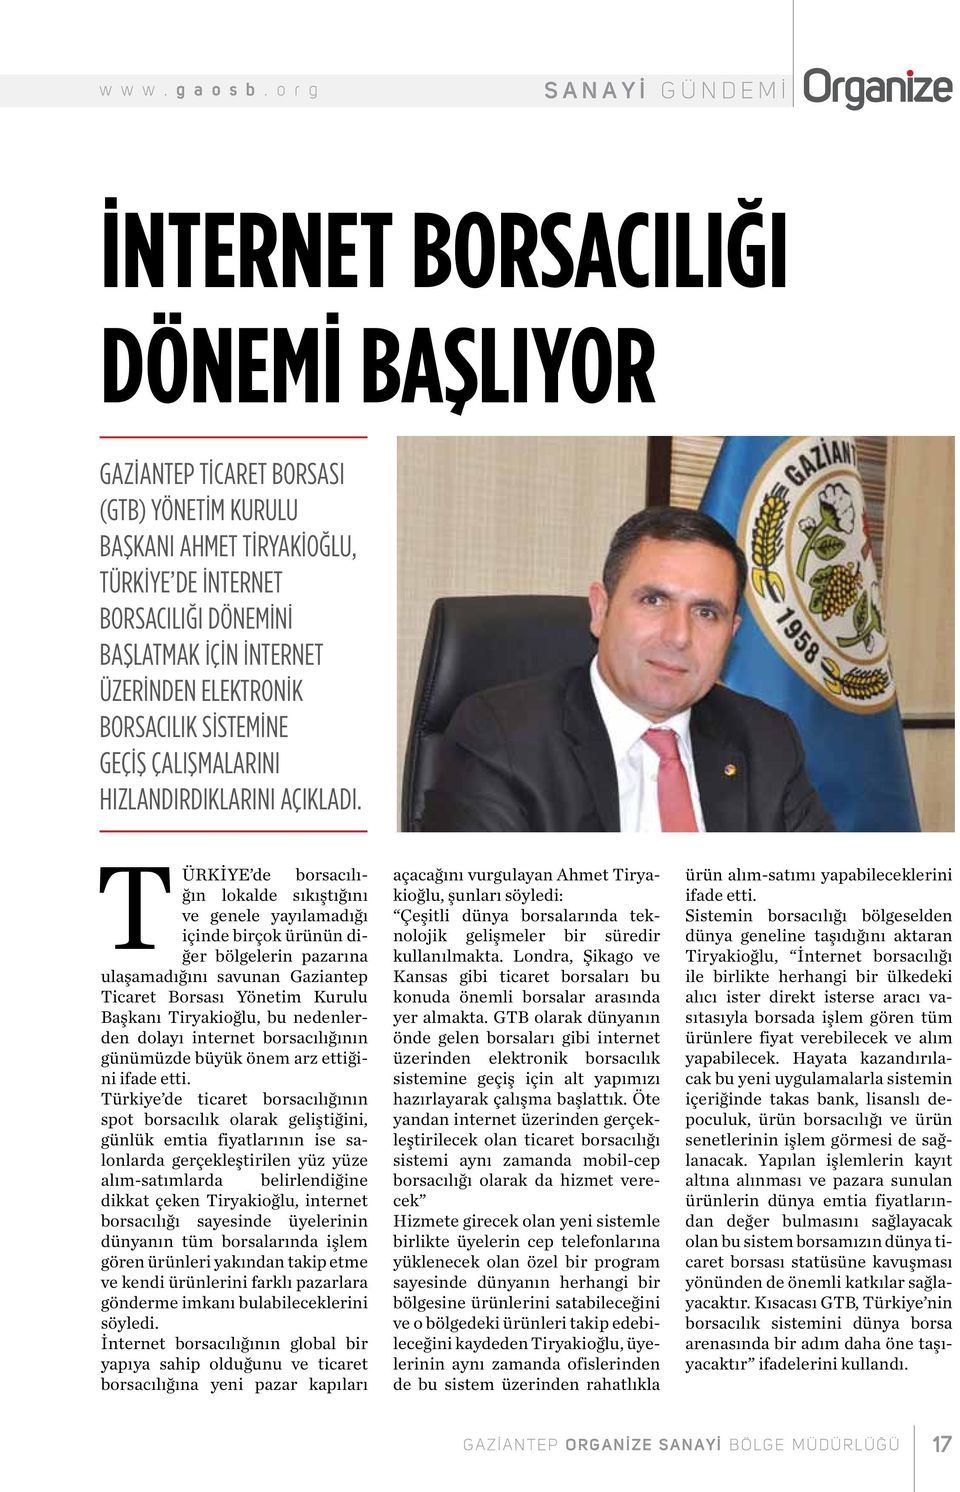 Türkiye de borsacılığın lokalde sıkıştığını ve genele yayılamadığı içinde birçok ürünün diğer bölgelerin pazarına ulaşamadığını savunan Gaziantep Ticaret Borsası Yönetim Kurulu Başkanı Tiryakioğlu,